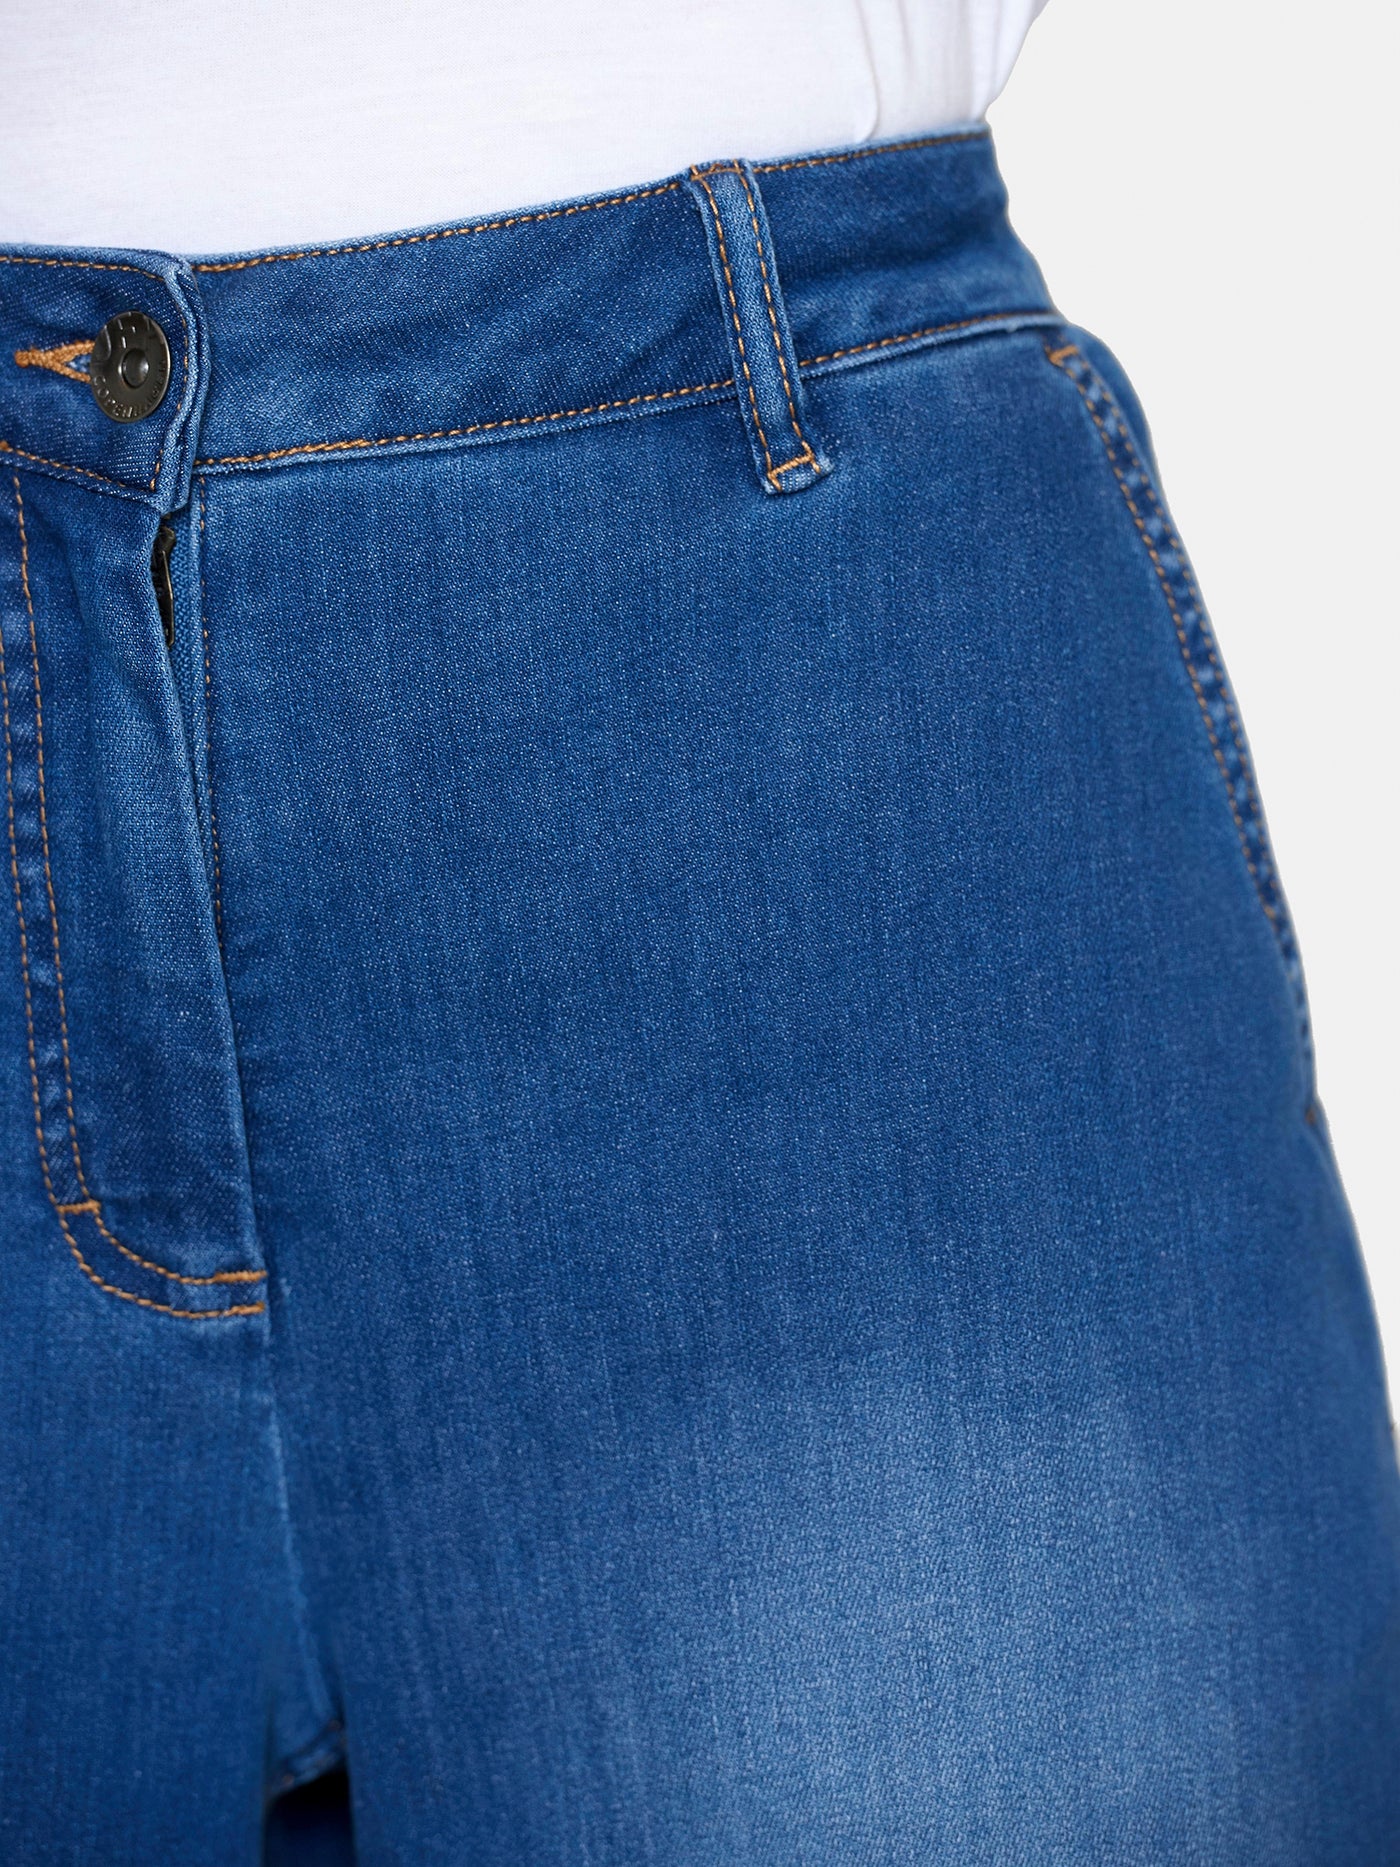 Jeans med vidde - Lys blå